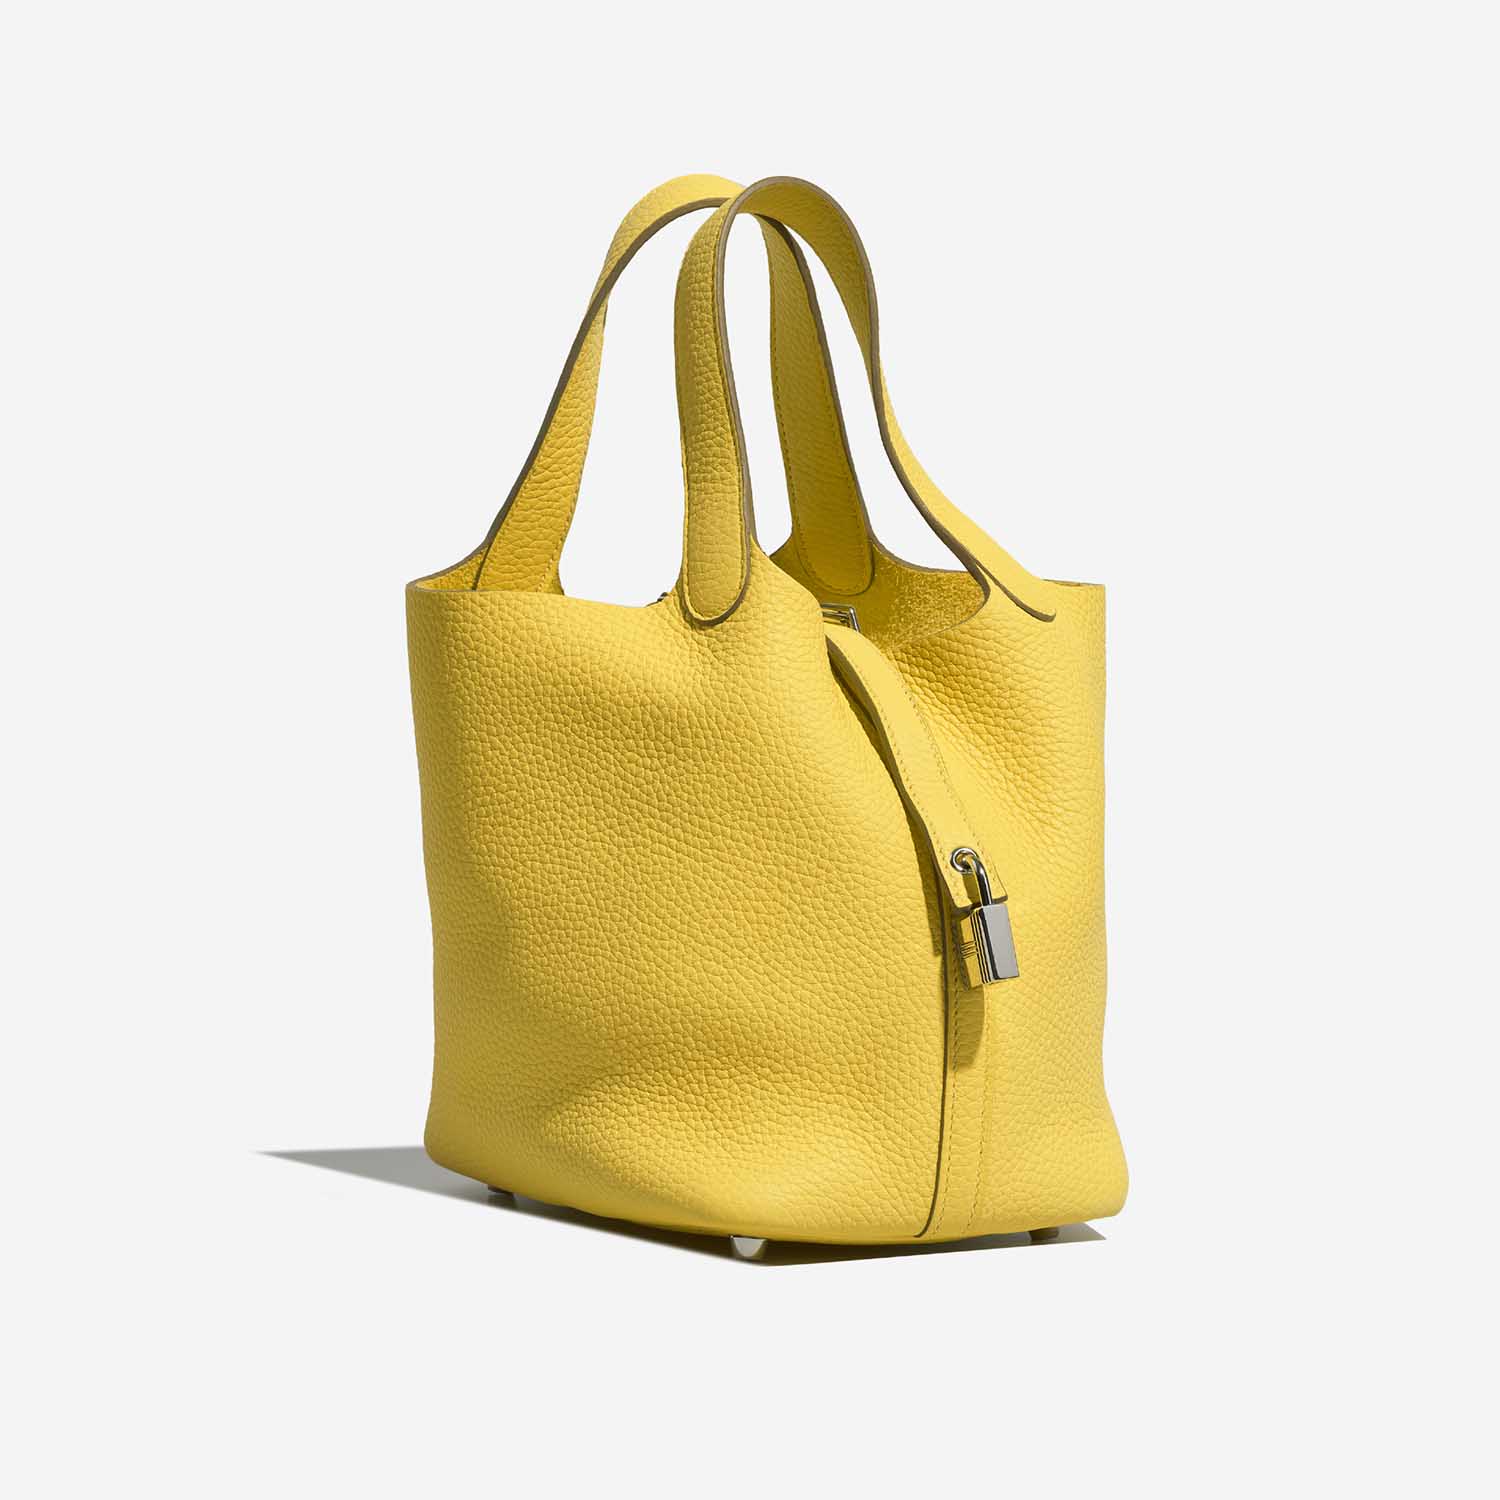 Hermès Picotin 18 Lime Side Front | Verkaufen Sie Ihre Designer-Tasche auf Saclab.com